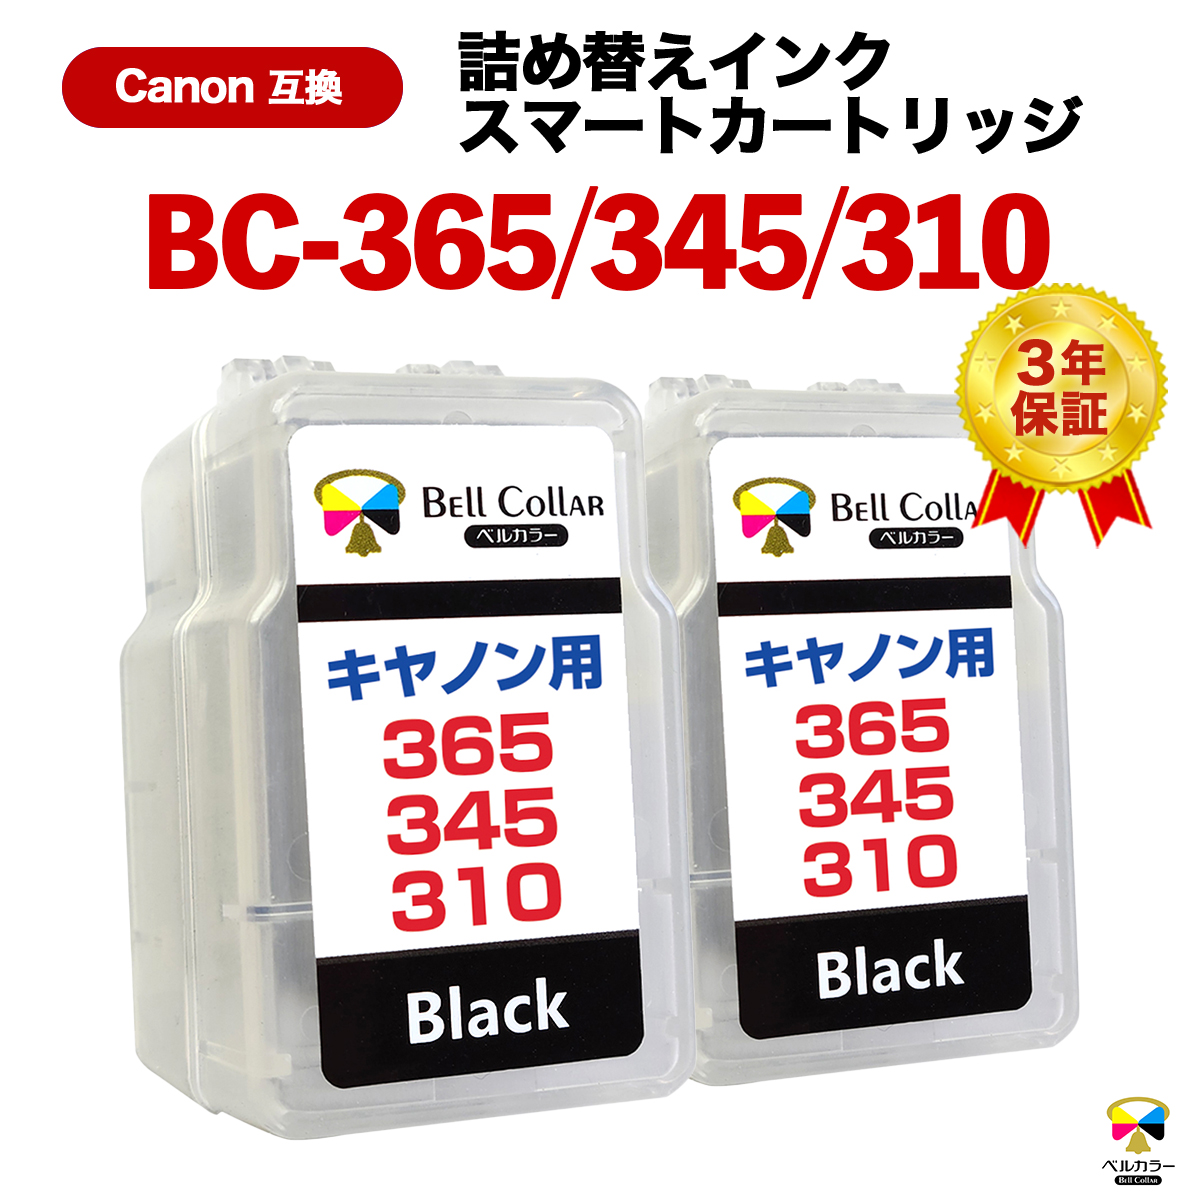 【楽天市場】【P2倍&5%OFF】3年保証 キャノン 用 pixus BC-365